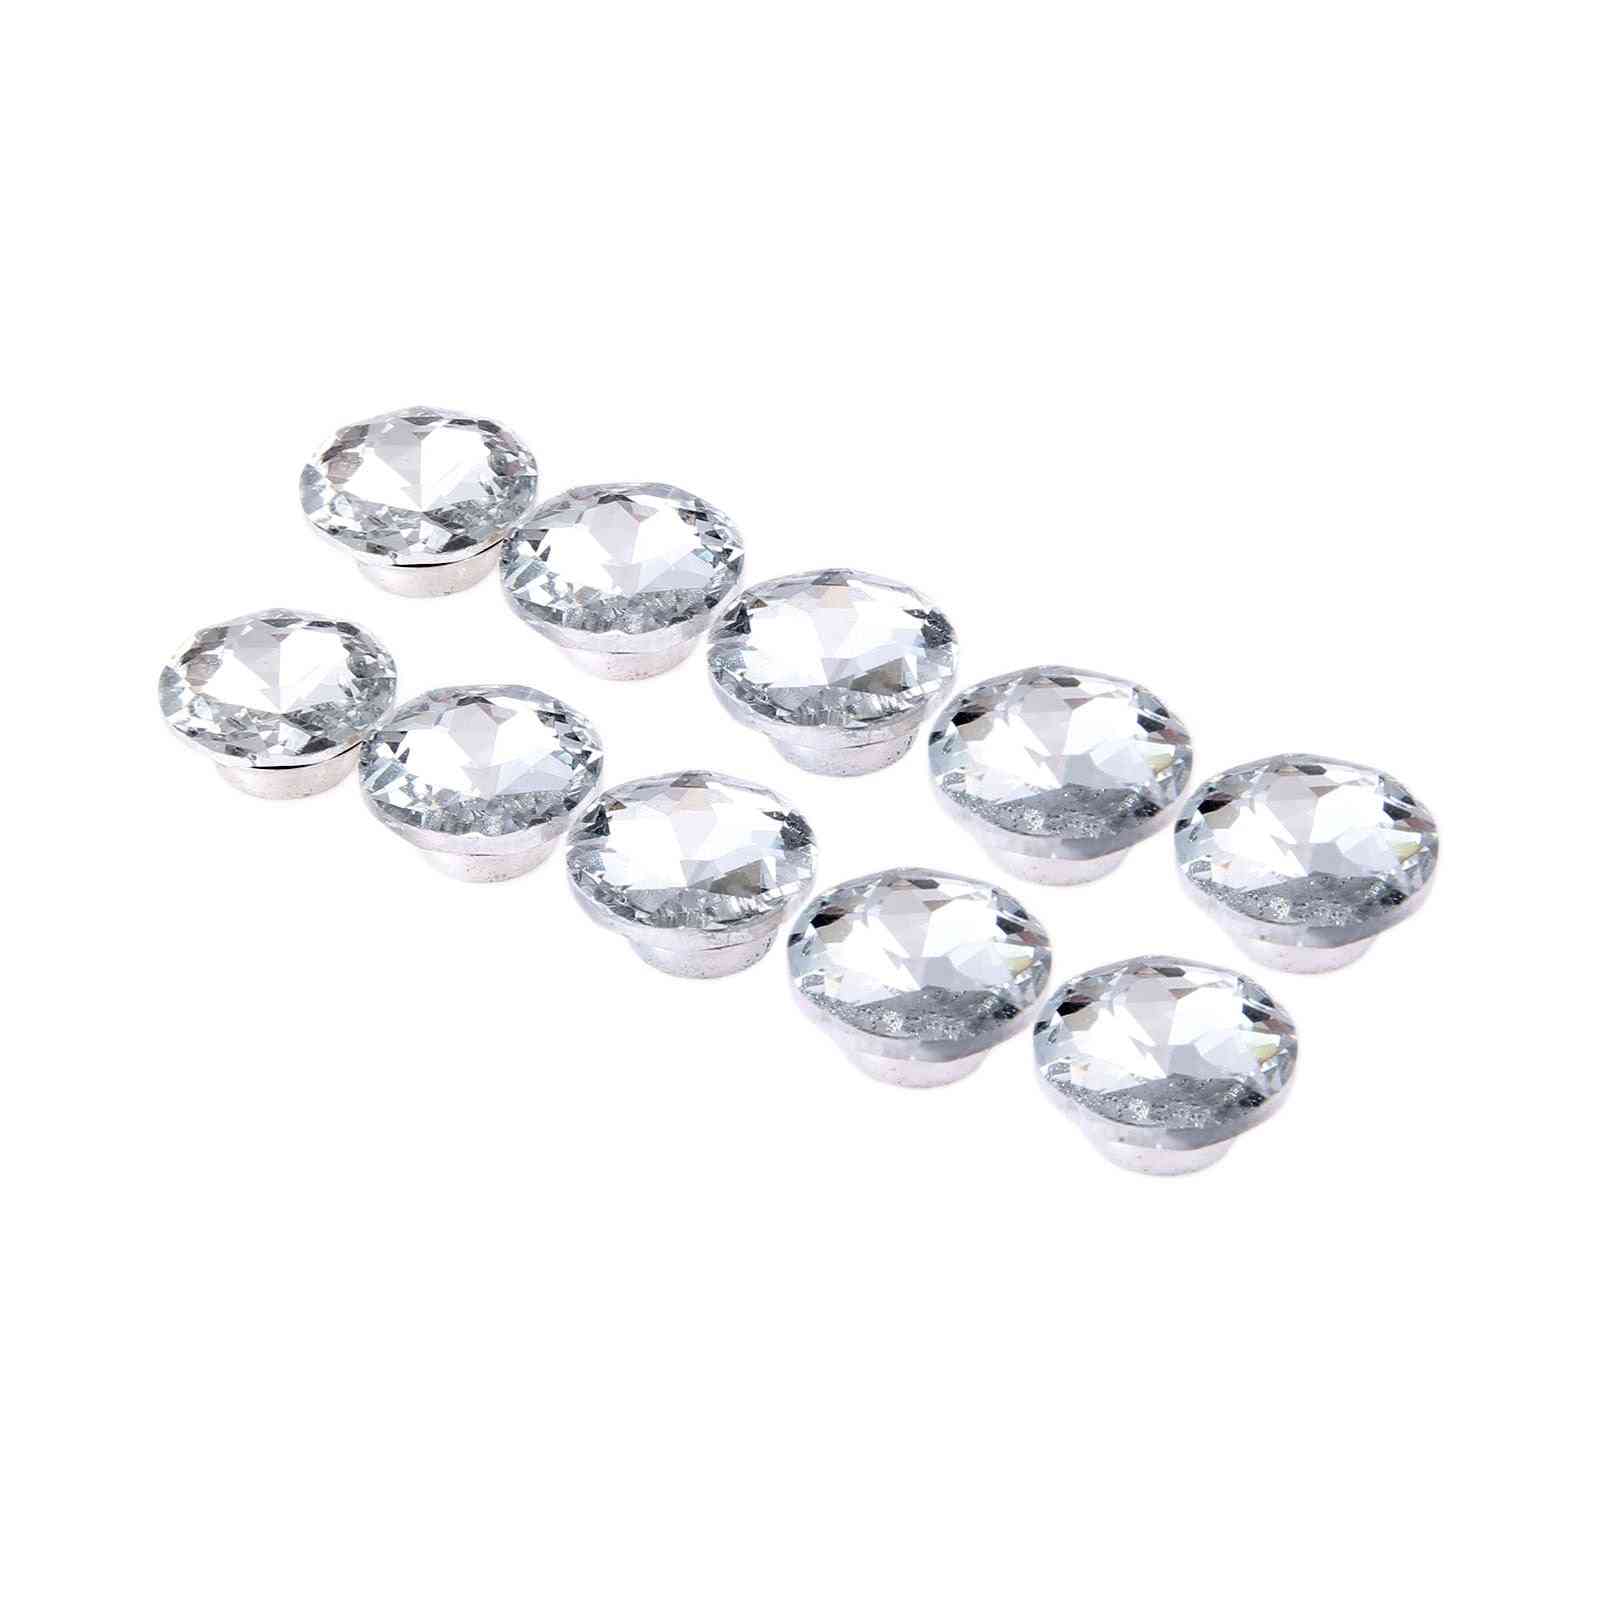 Diamantni kristali za oblazinjenje žebljev, zatiči za gumbe